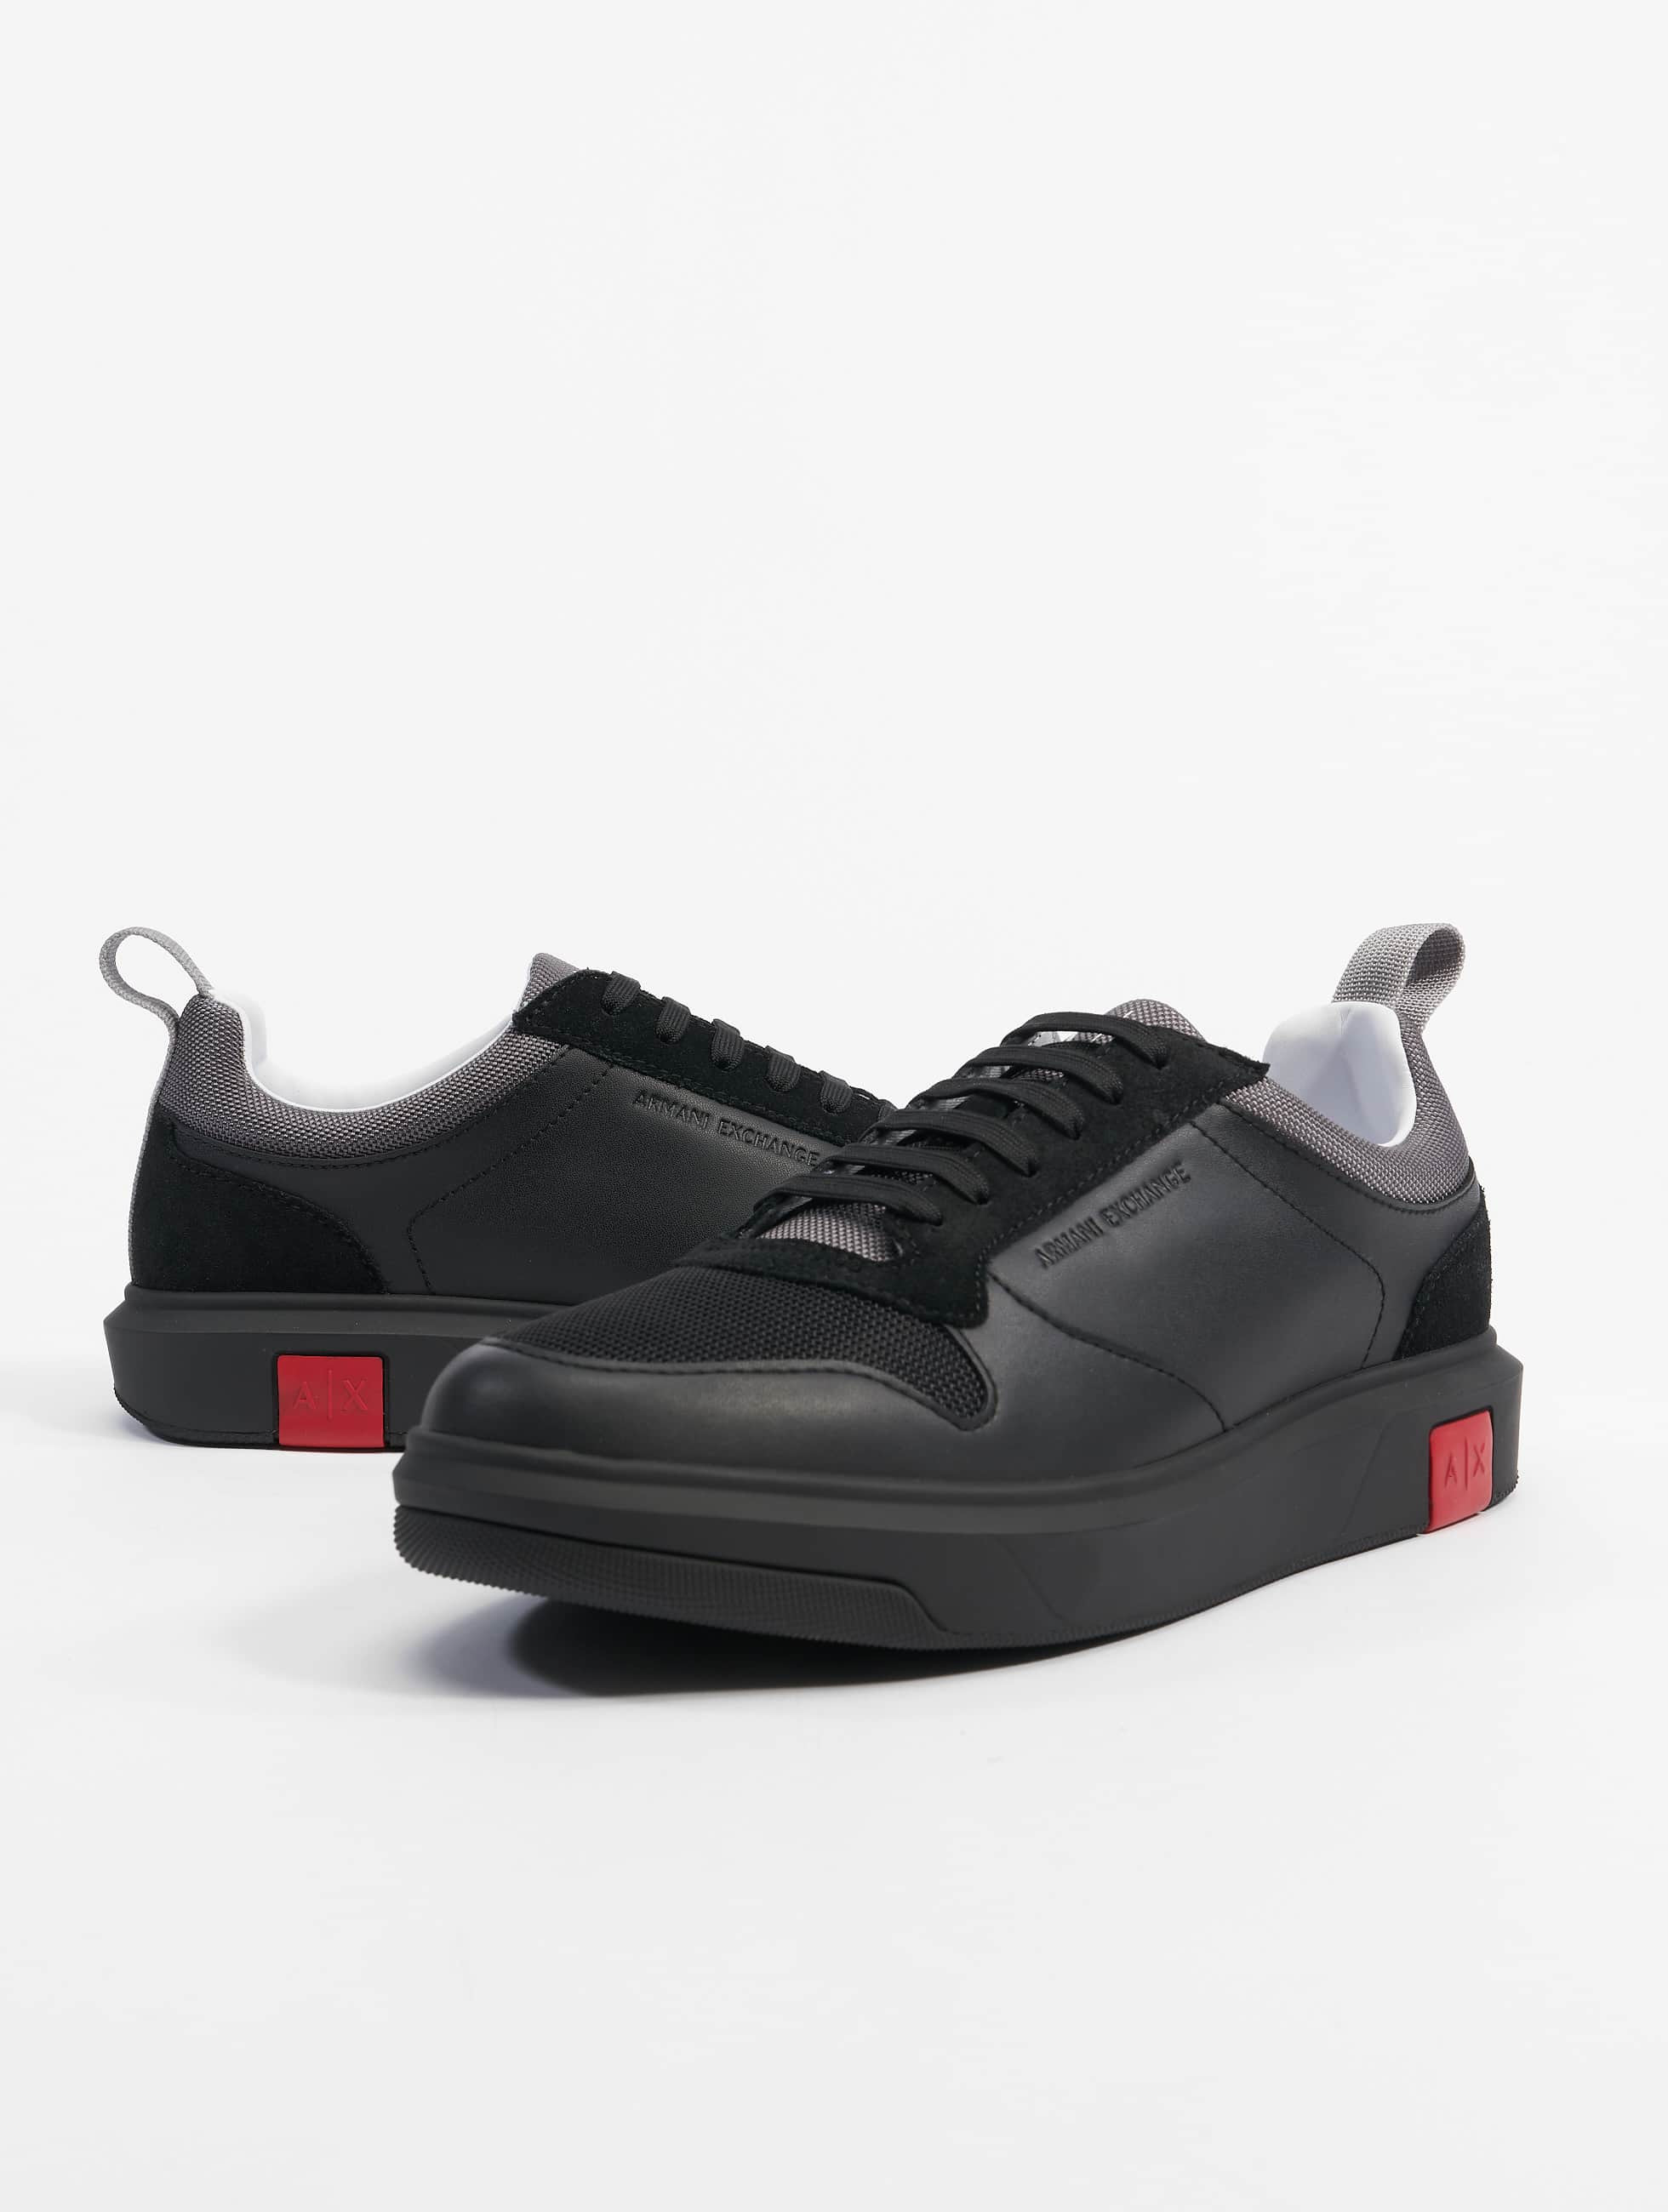 nemen kapperszaak spier Armani schoen / sneaker Armani in zwart 904053